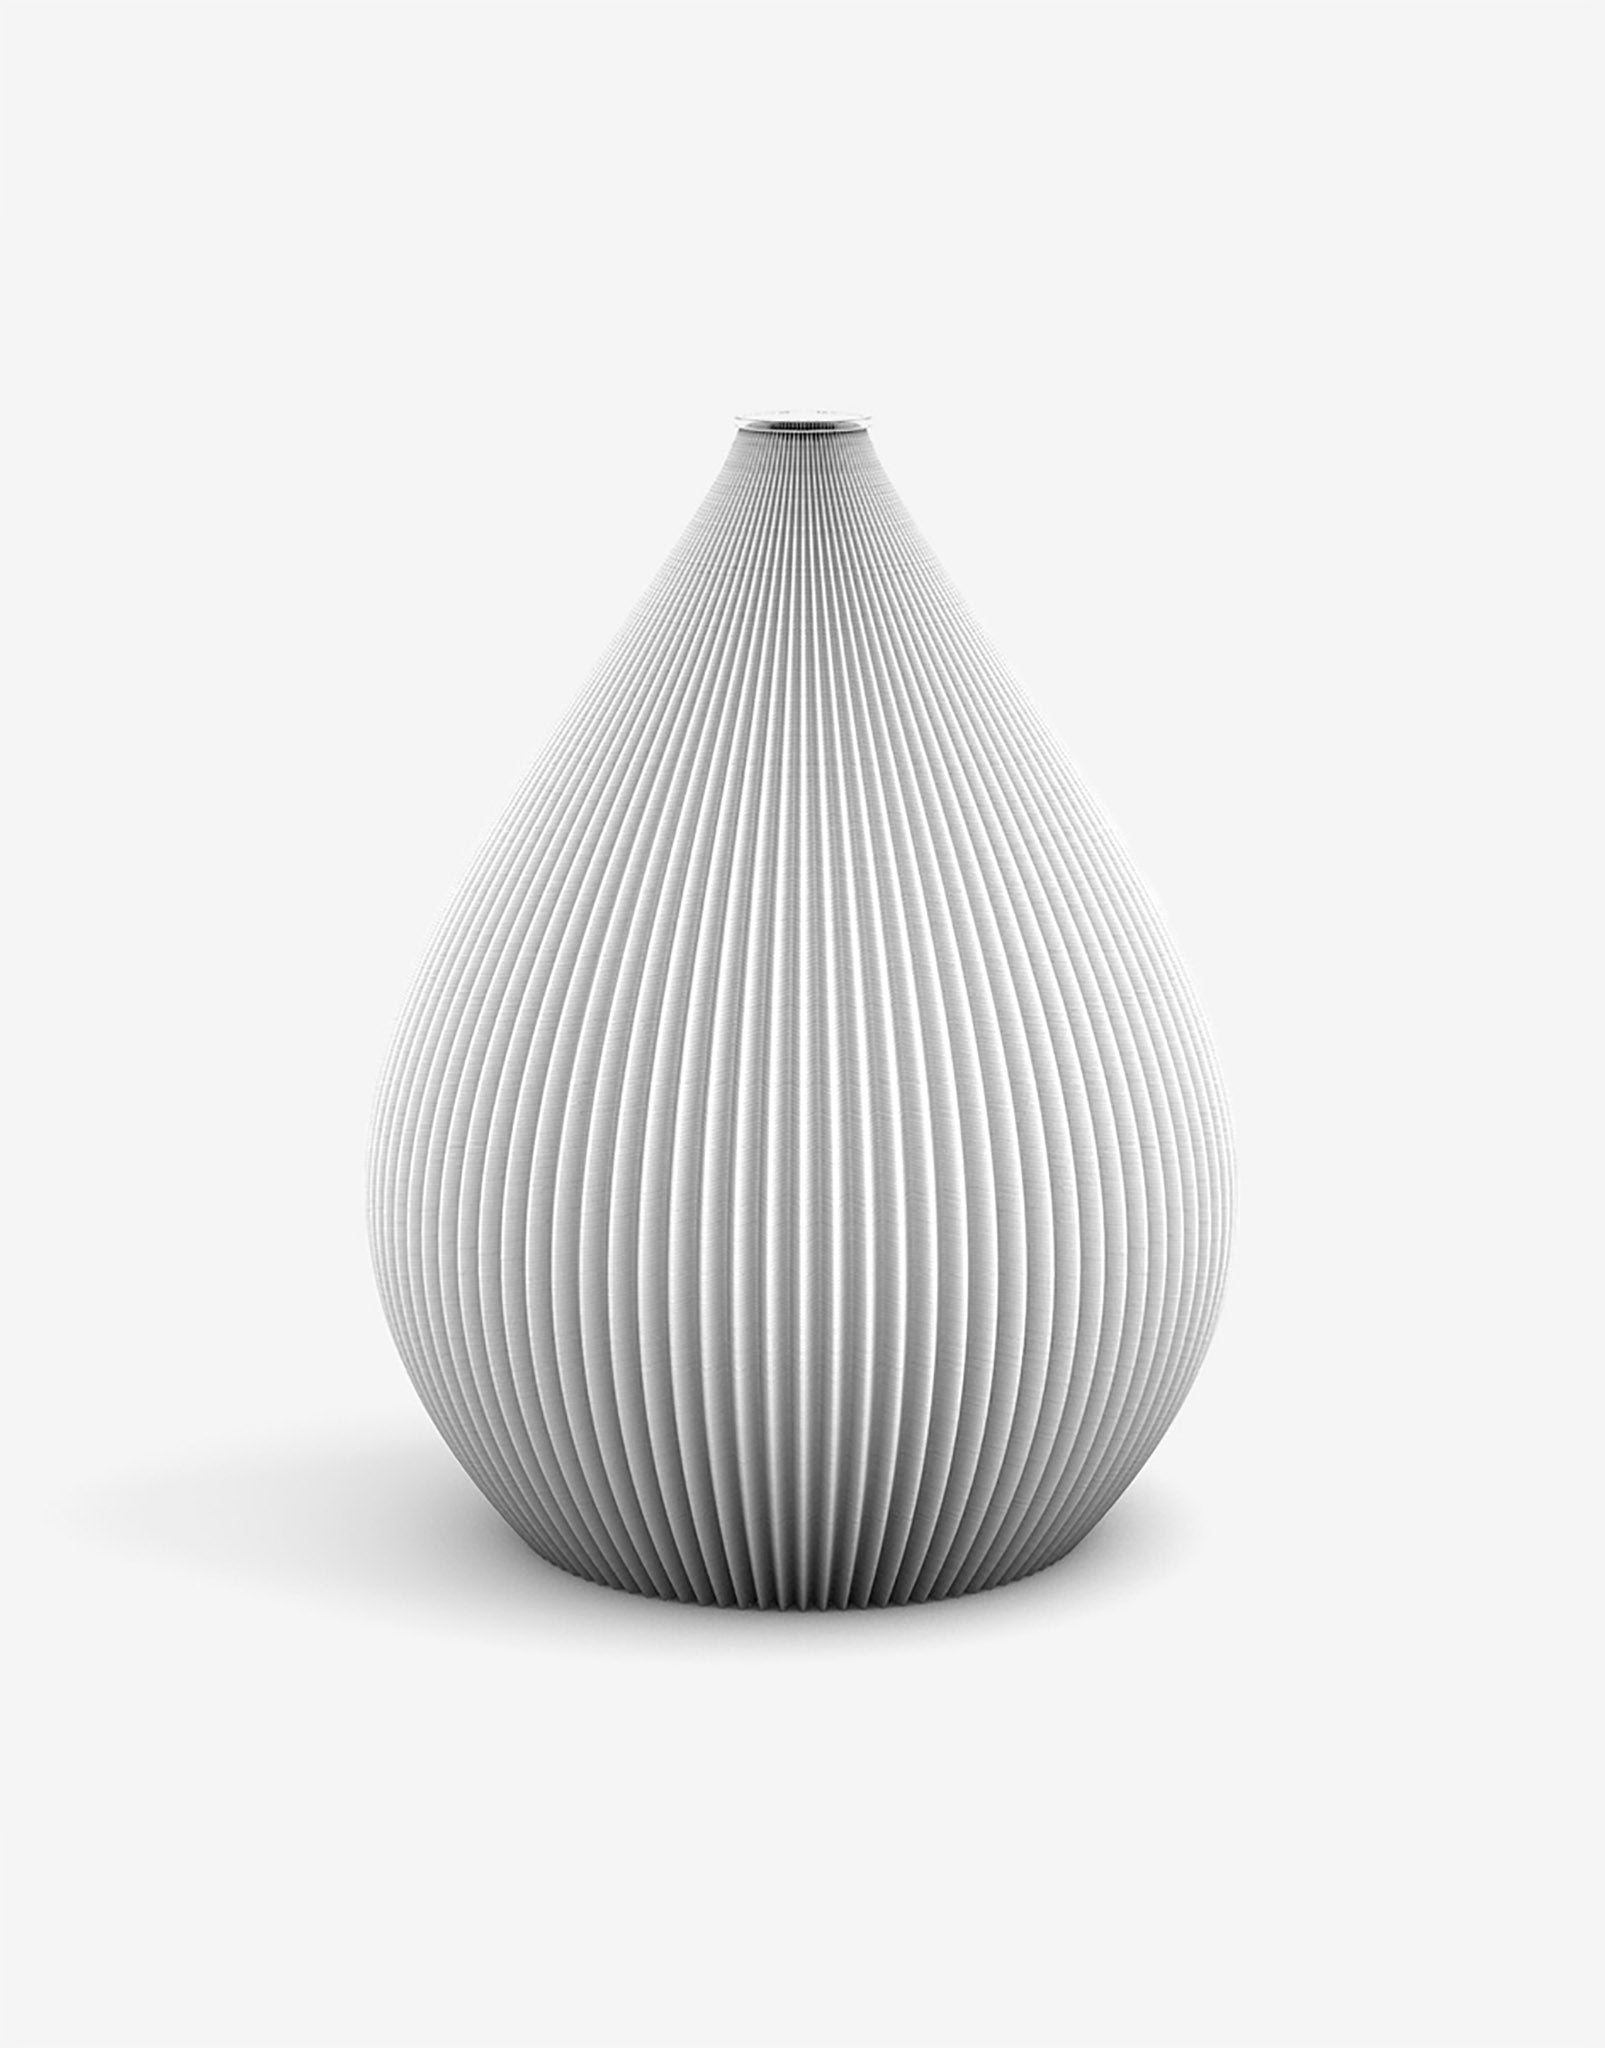 Ovale 3D Druck Kunststoff Vase Balloon von Recozy mit Glaseinsatz, Farbe: Arctic White, Größe: M